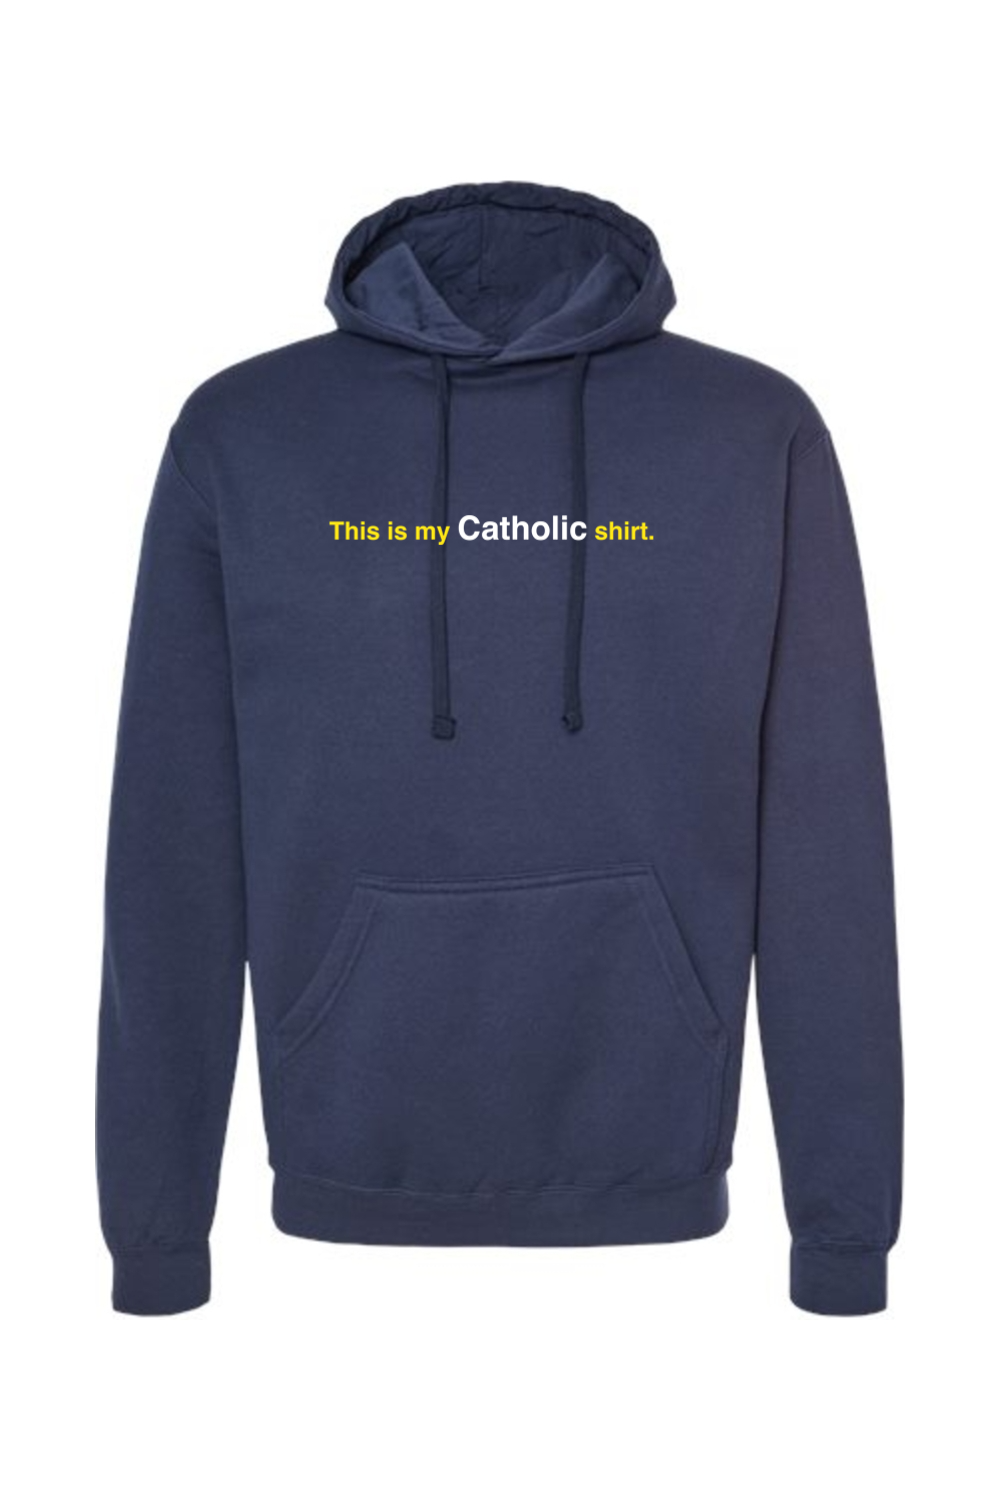 My Catholic Shirt - Hoodie Sweatshirt